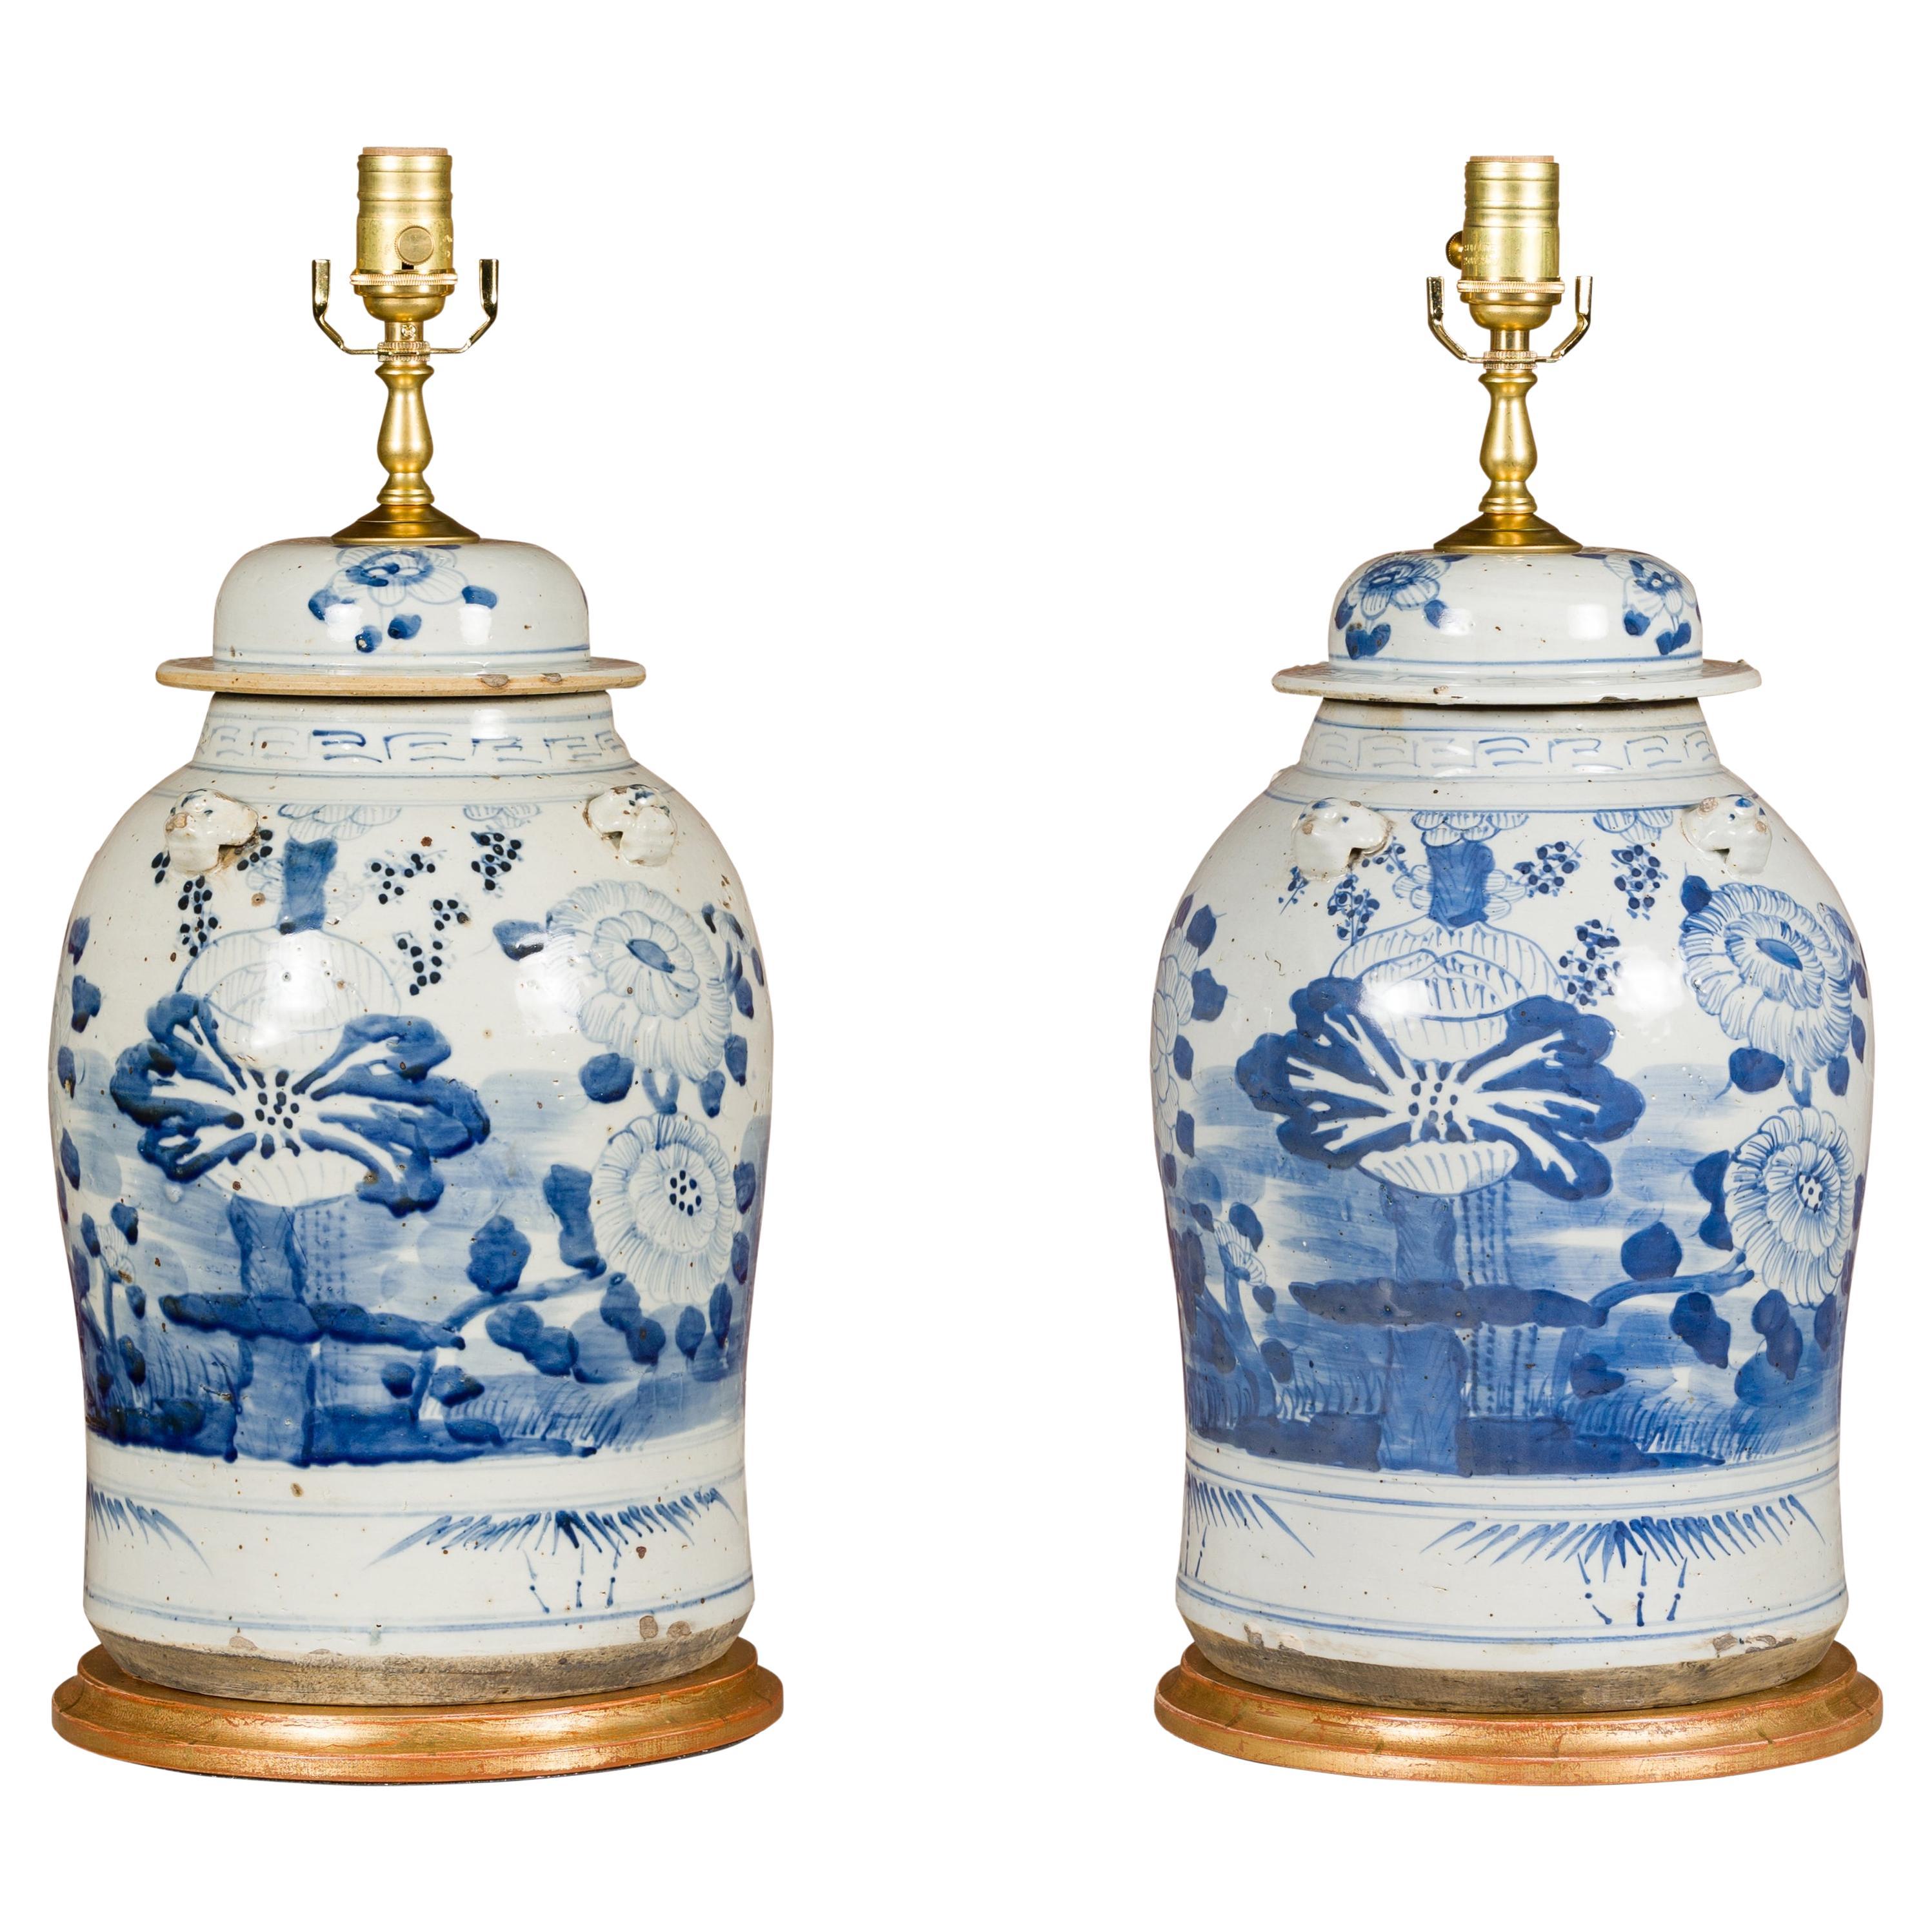 Paar asiatische blau-weiße Porzellangefäße aus Asien, die zu verdrahteten Tischlampen verarbeitet wurden